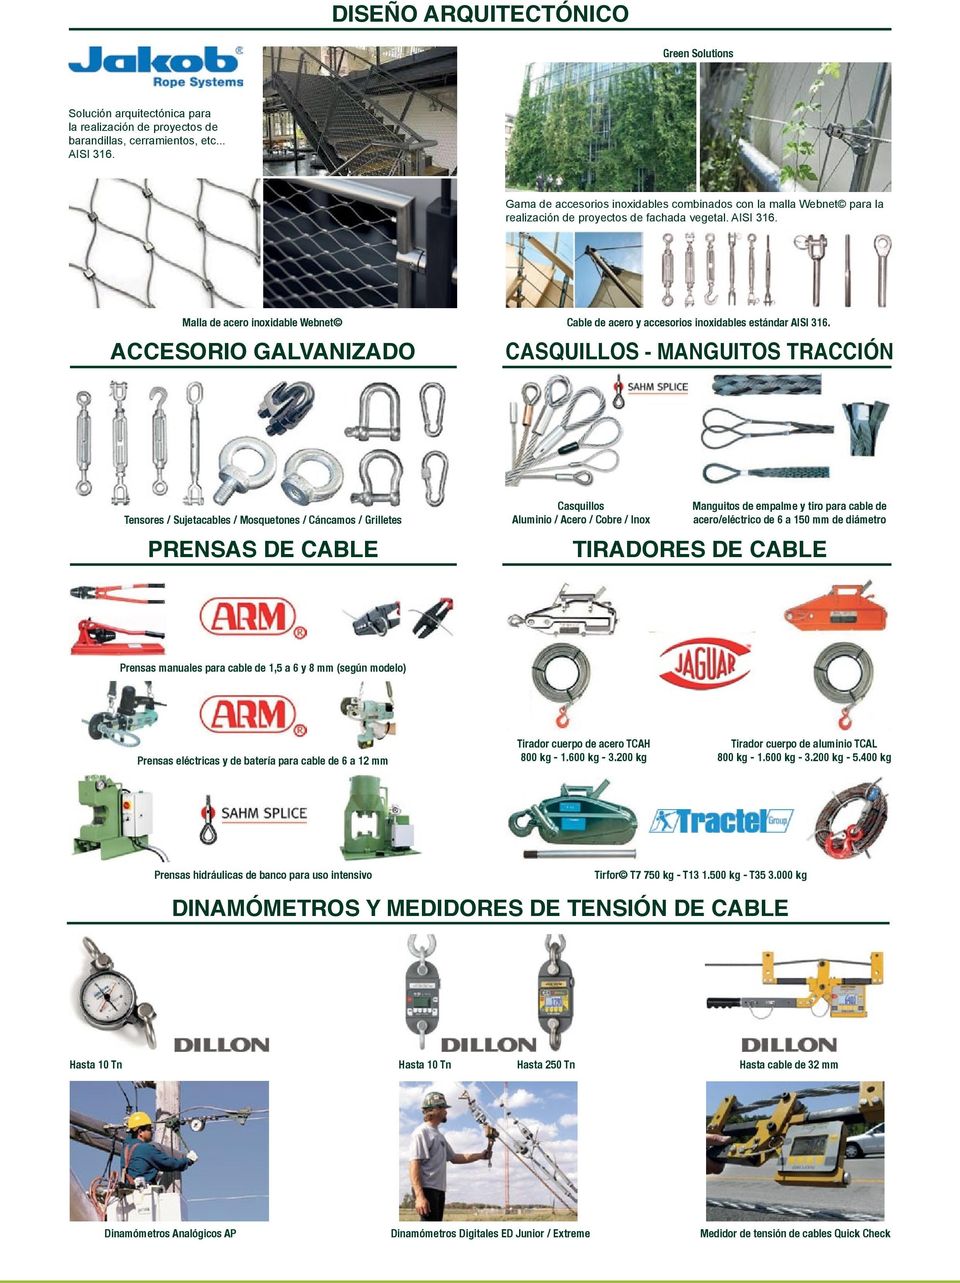 Malla de acero inoxidable Webnet ACCESORIO GALVANIZADO Cable de acero y accesorios inoxidables estándar AISI 316.